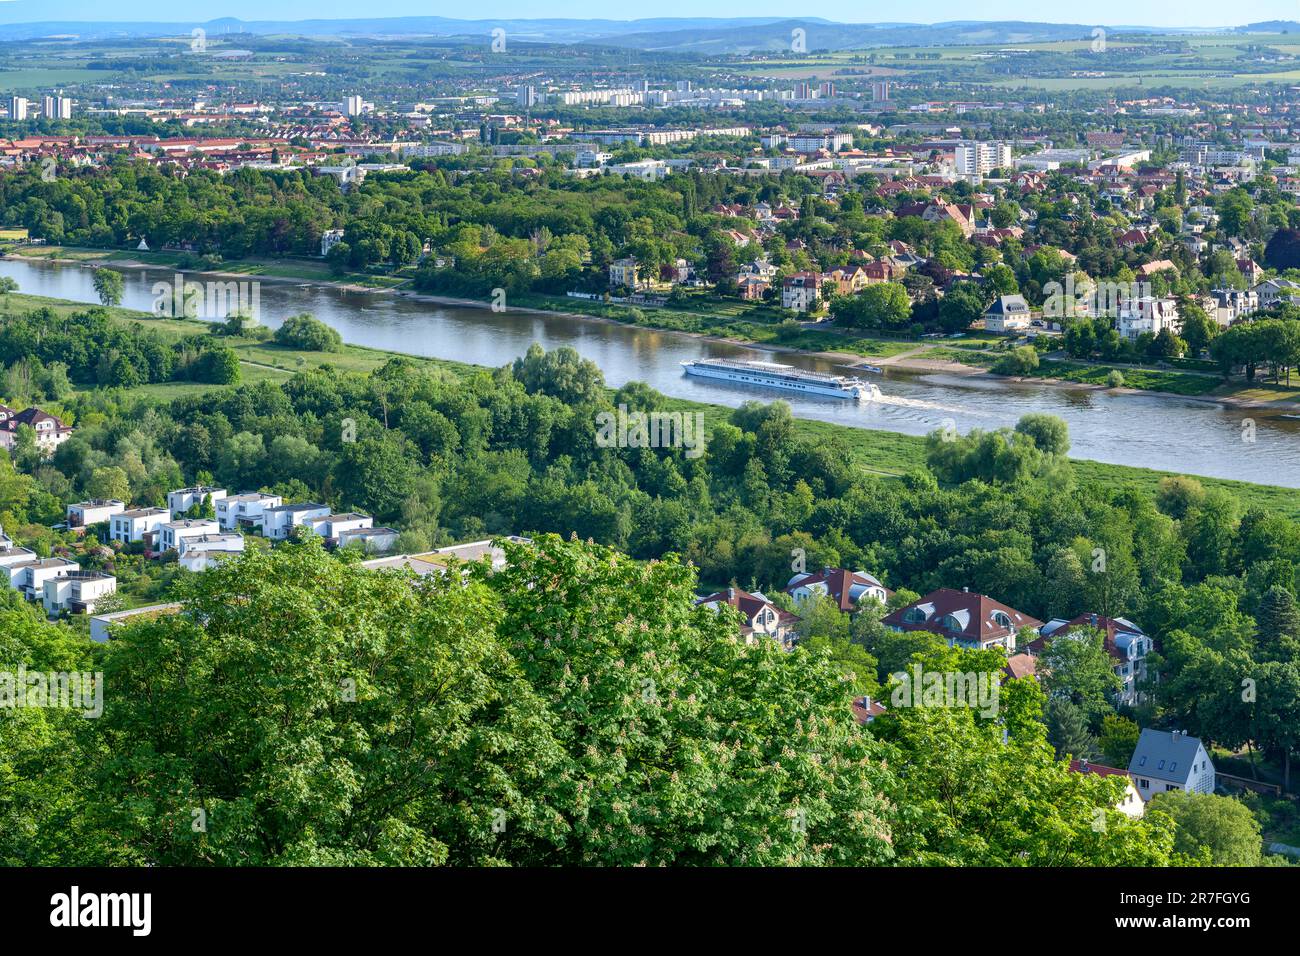 La vista dalla ferrovia sospesa di Dresda - la Schebebahn, che porta i passeggeri fino al punto panoramico superiore che si affaccia sul fiume Elba. Foto Stock